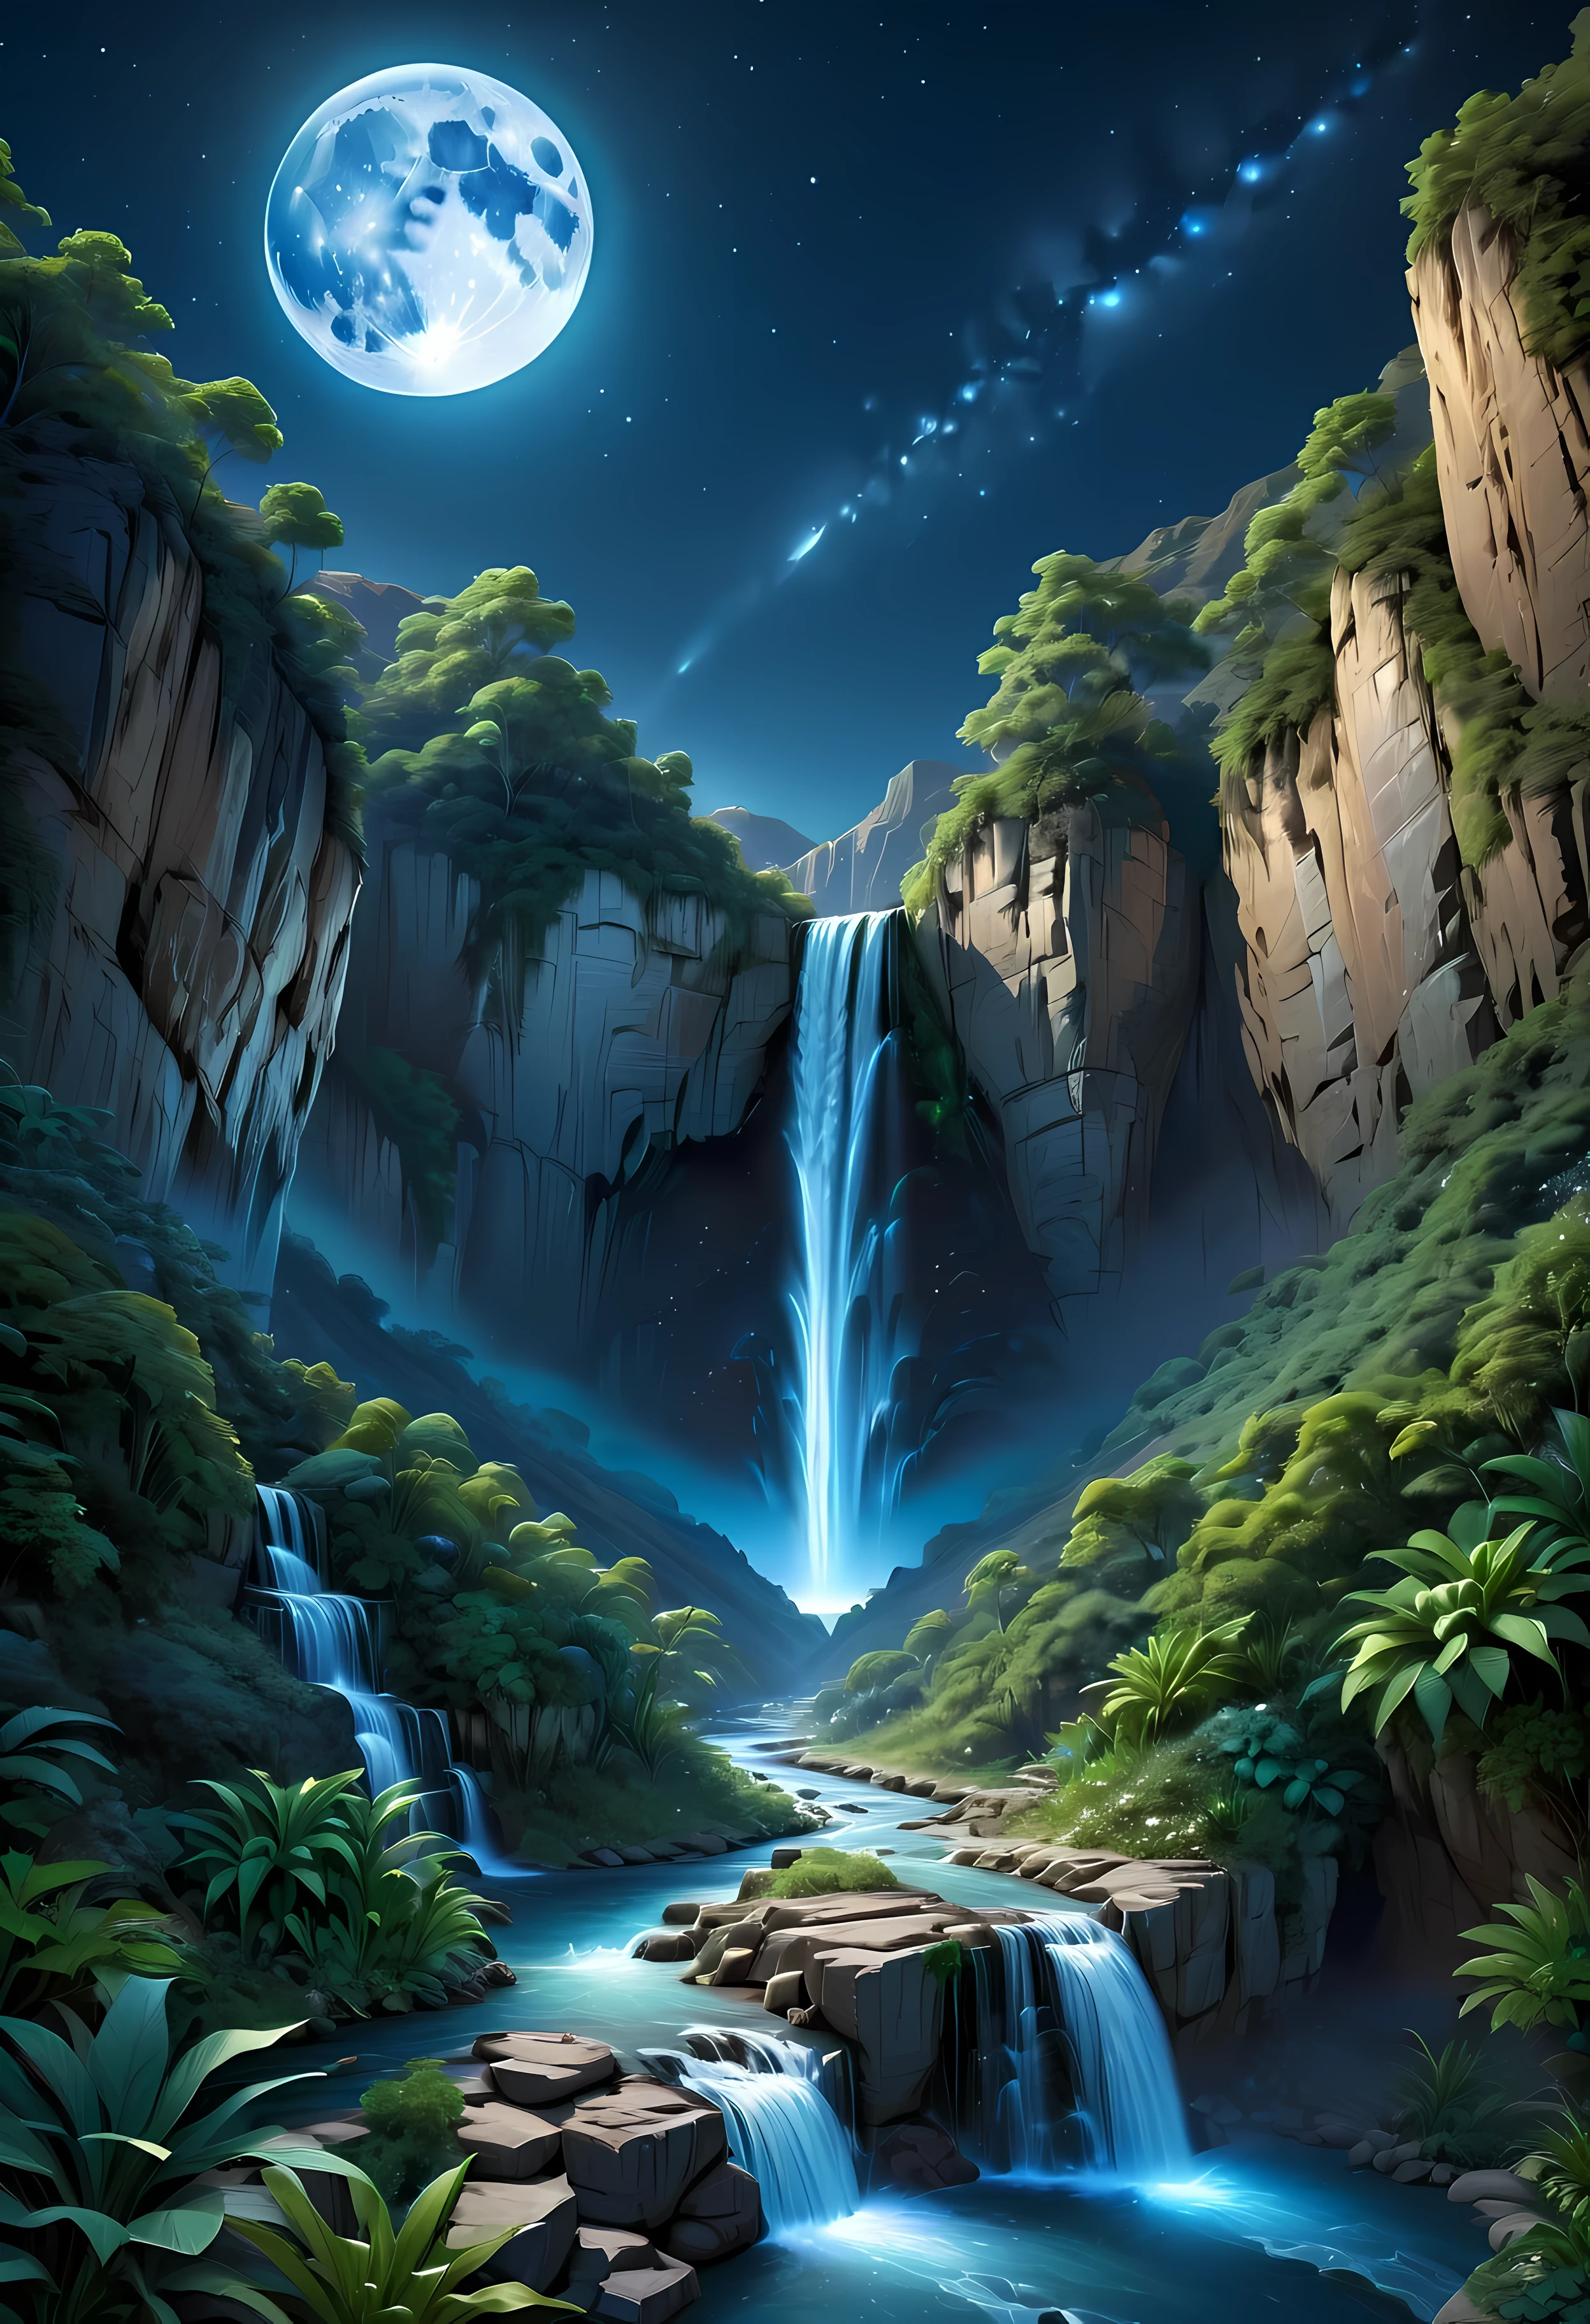 Возвышающийся крутой и высокий водопад, скалистый сад, дикий, Асимметричный каньон с водопадом,
Сосуществование с природной средой, водопад каньон ночь, ясное ночное небо, метеоры через, лунный свет, чрезвычайно подробный, Лучшее качество, шедевр, высокое разрешение, Гиперреалистичный, 8К, вид сверху,  вид под высоким углом, Синяя цветовая палитра, минимализм.